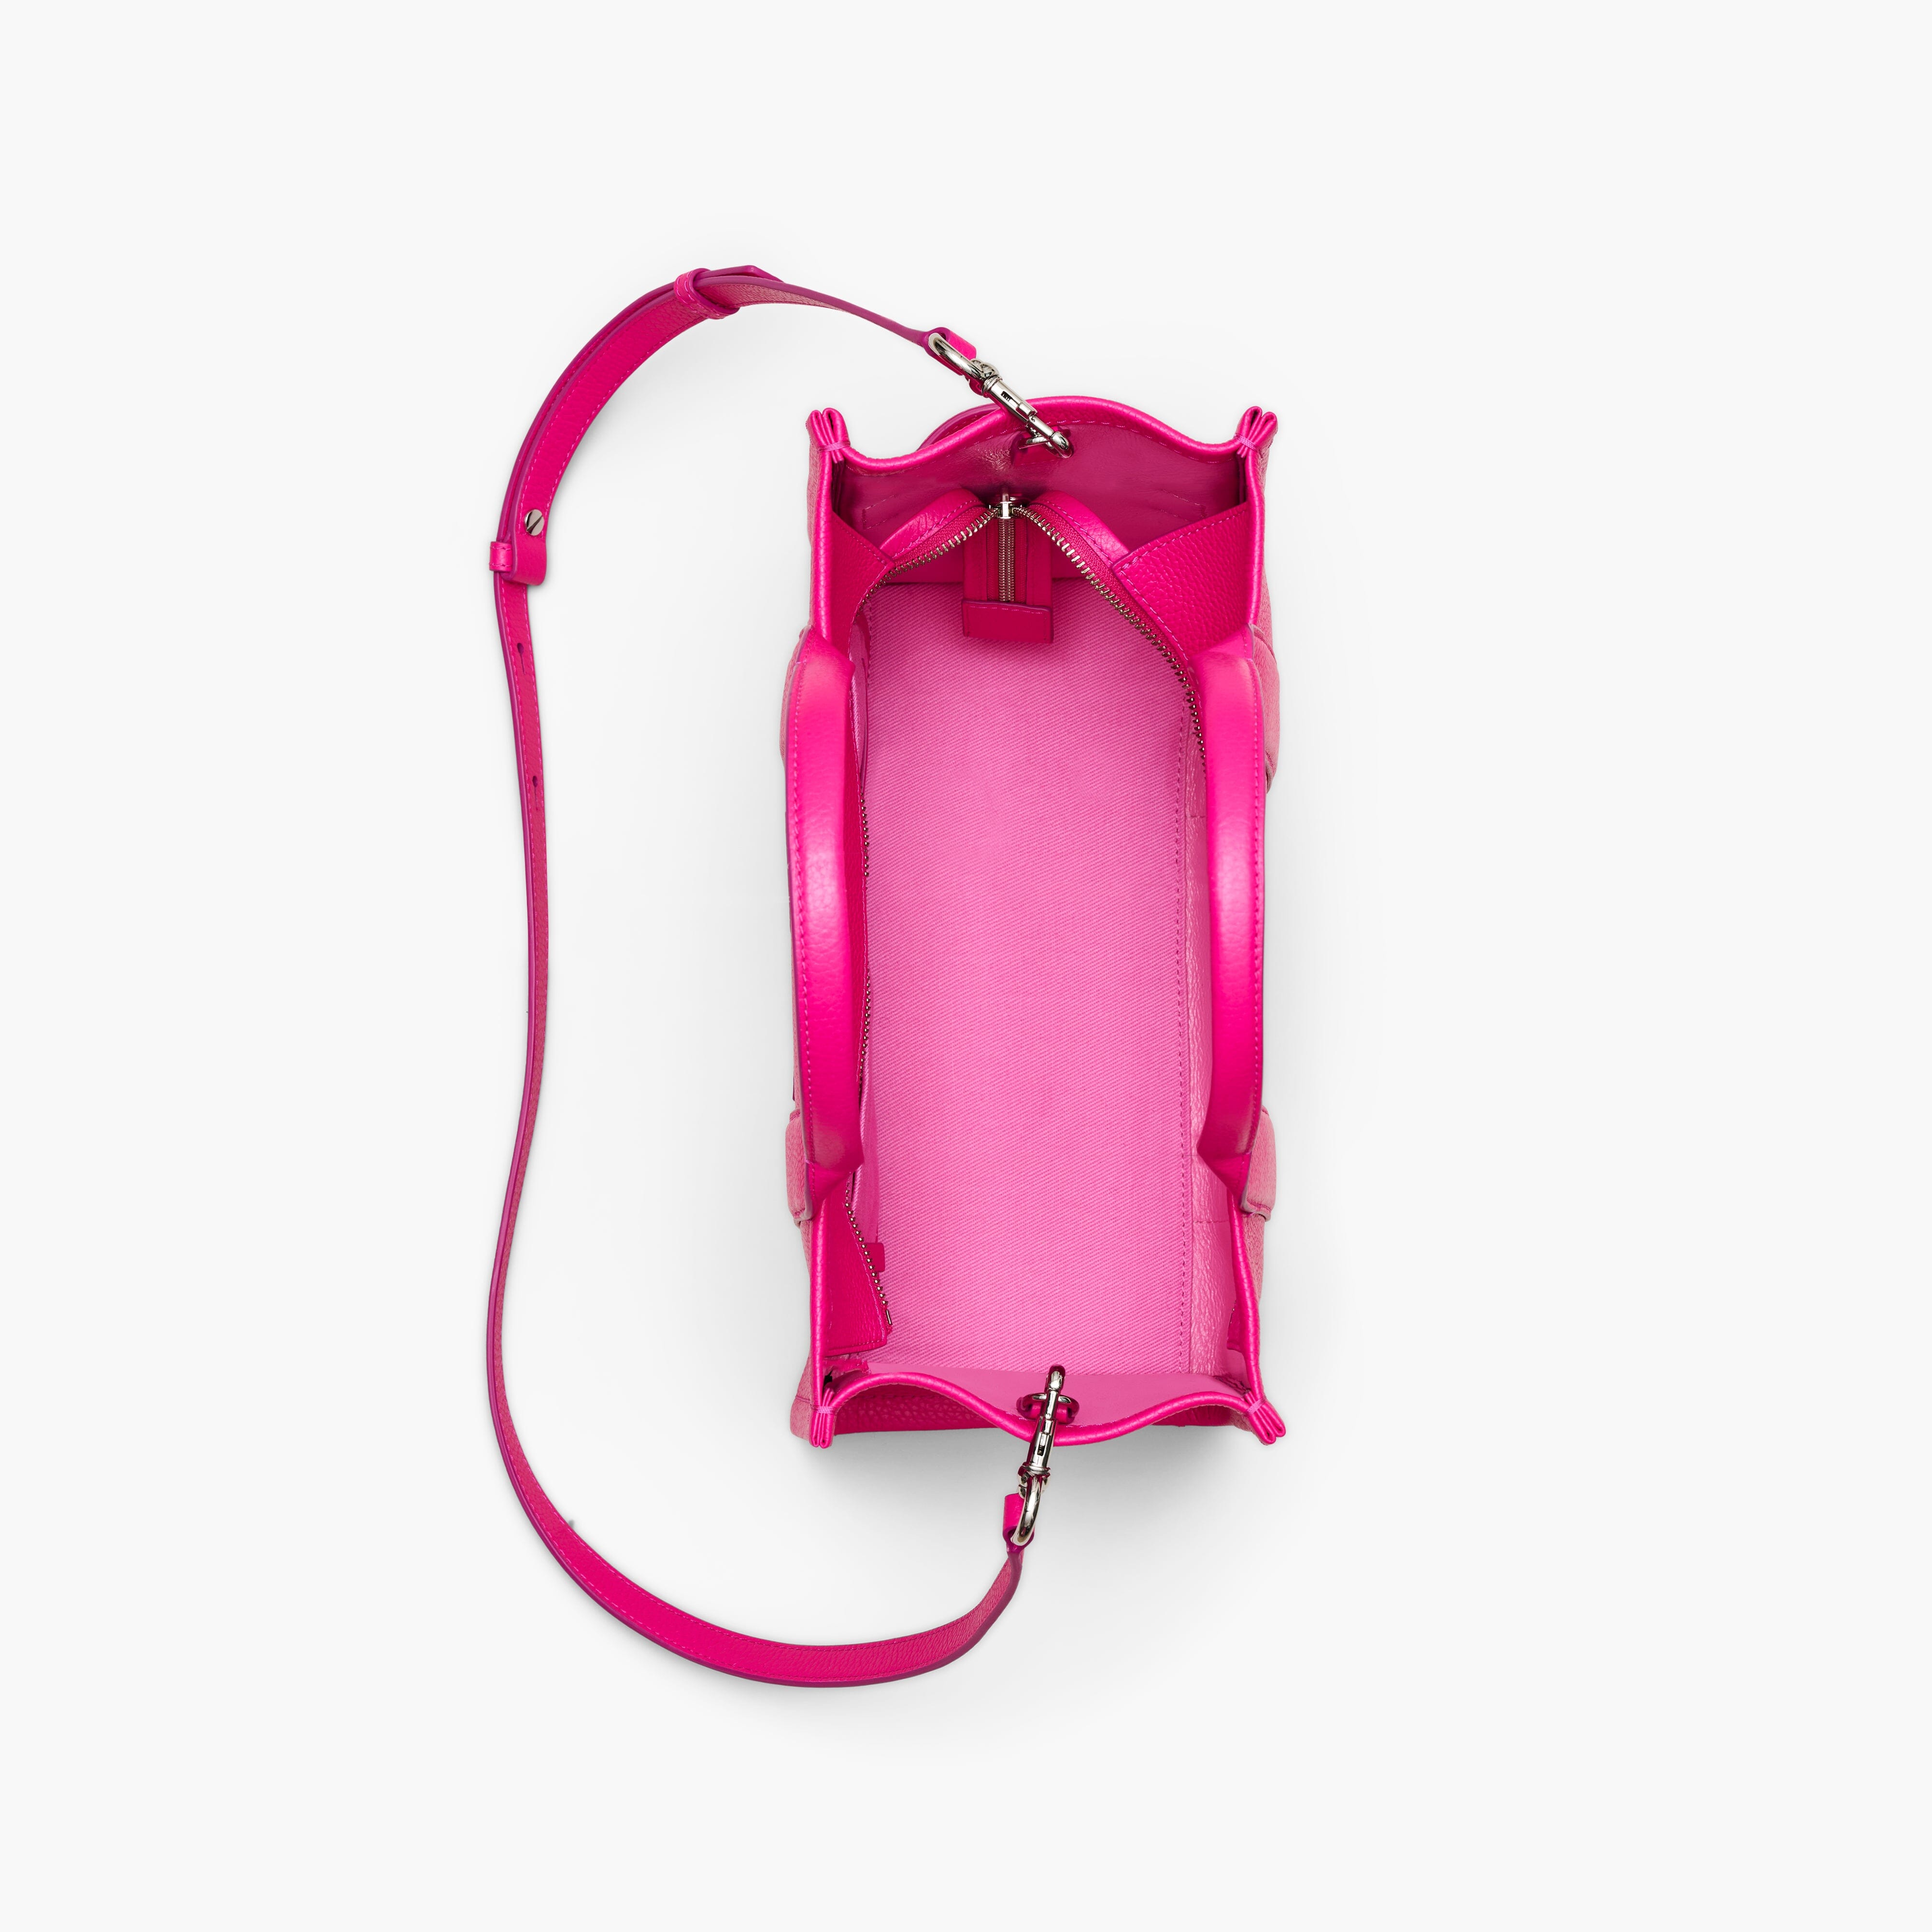 MARC JACOBS - Medium Tote Bag H004L01PF21- 665 - Hot Pink Borse Marc Jacobs 